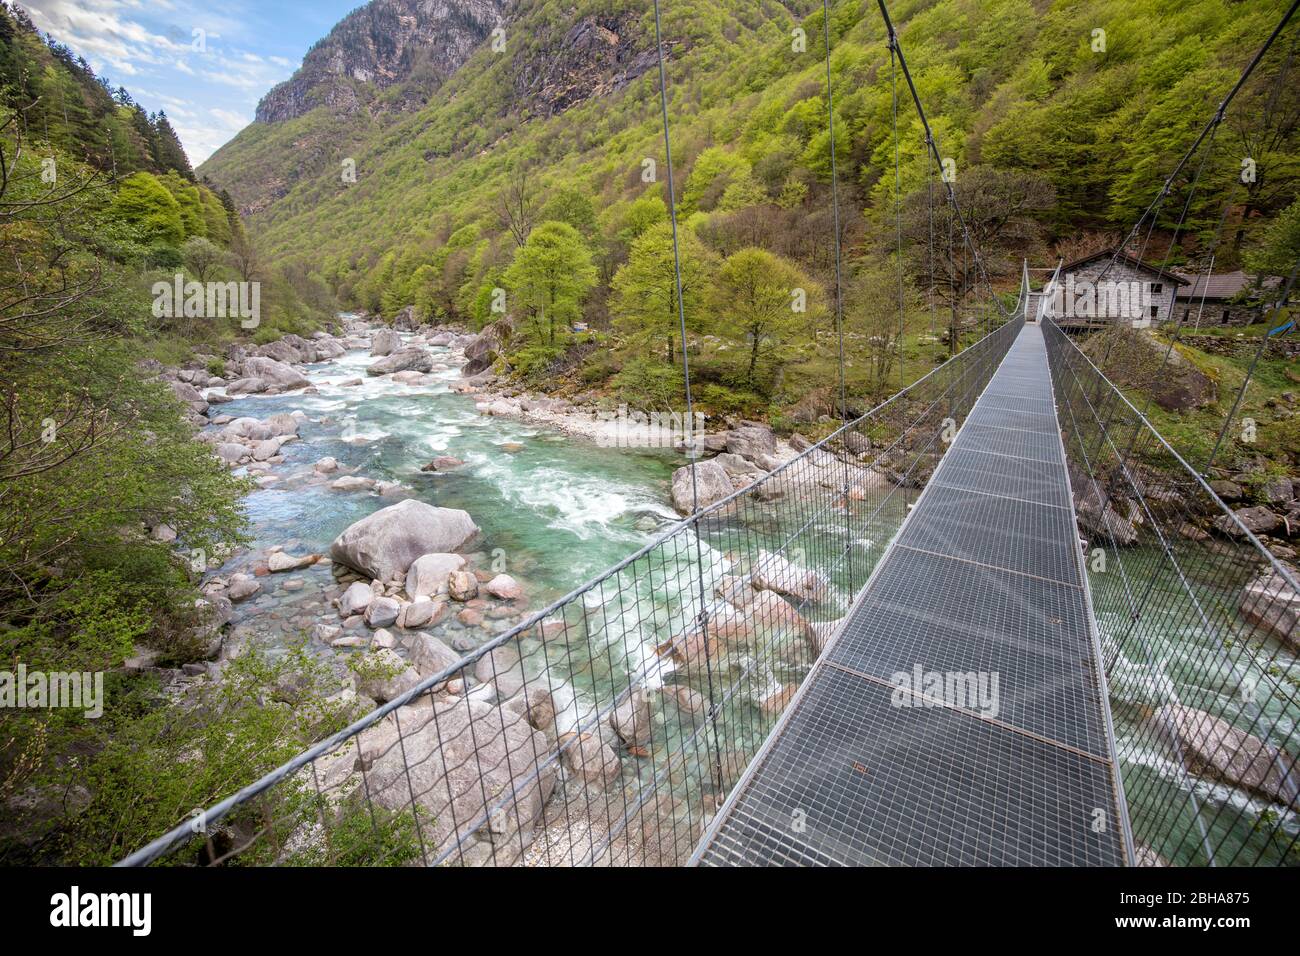 Suisse, Tessin, Locarno, Verzasca Valley, pont suspendu, via Verzasca, eau verte, roches lisses Banque D'Images